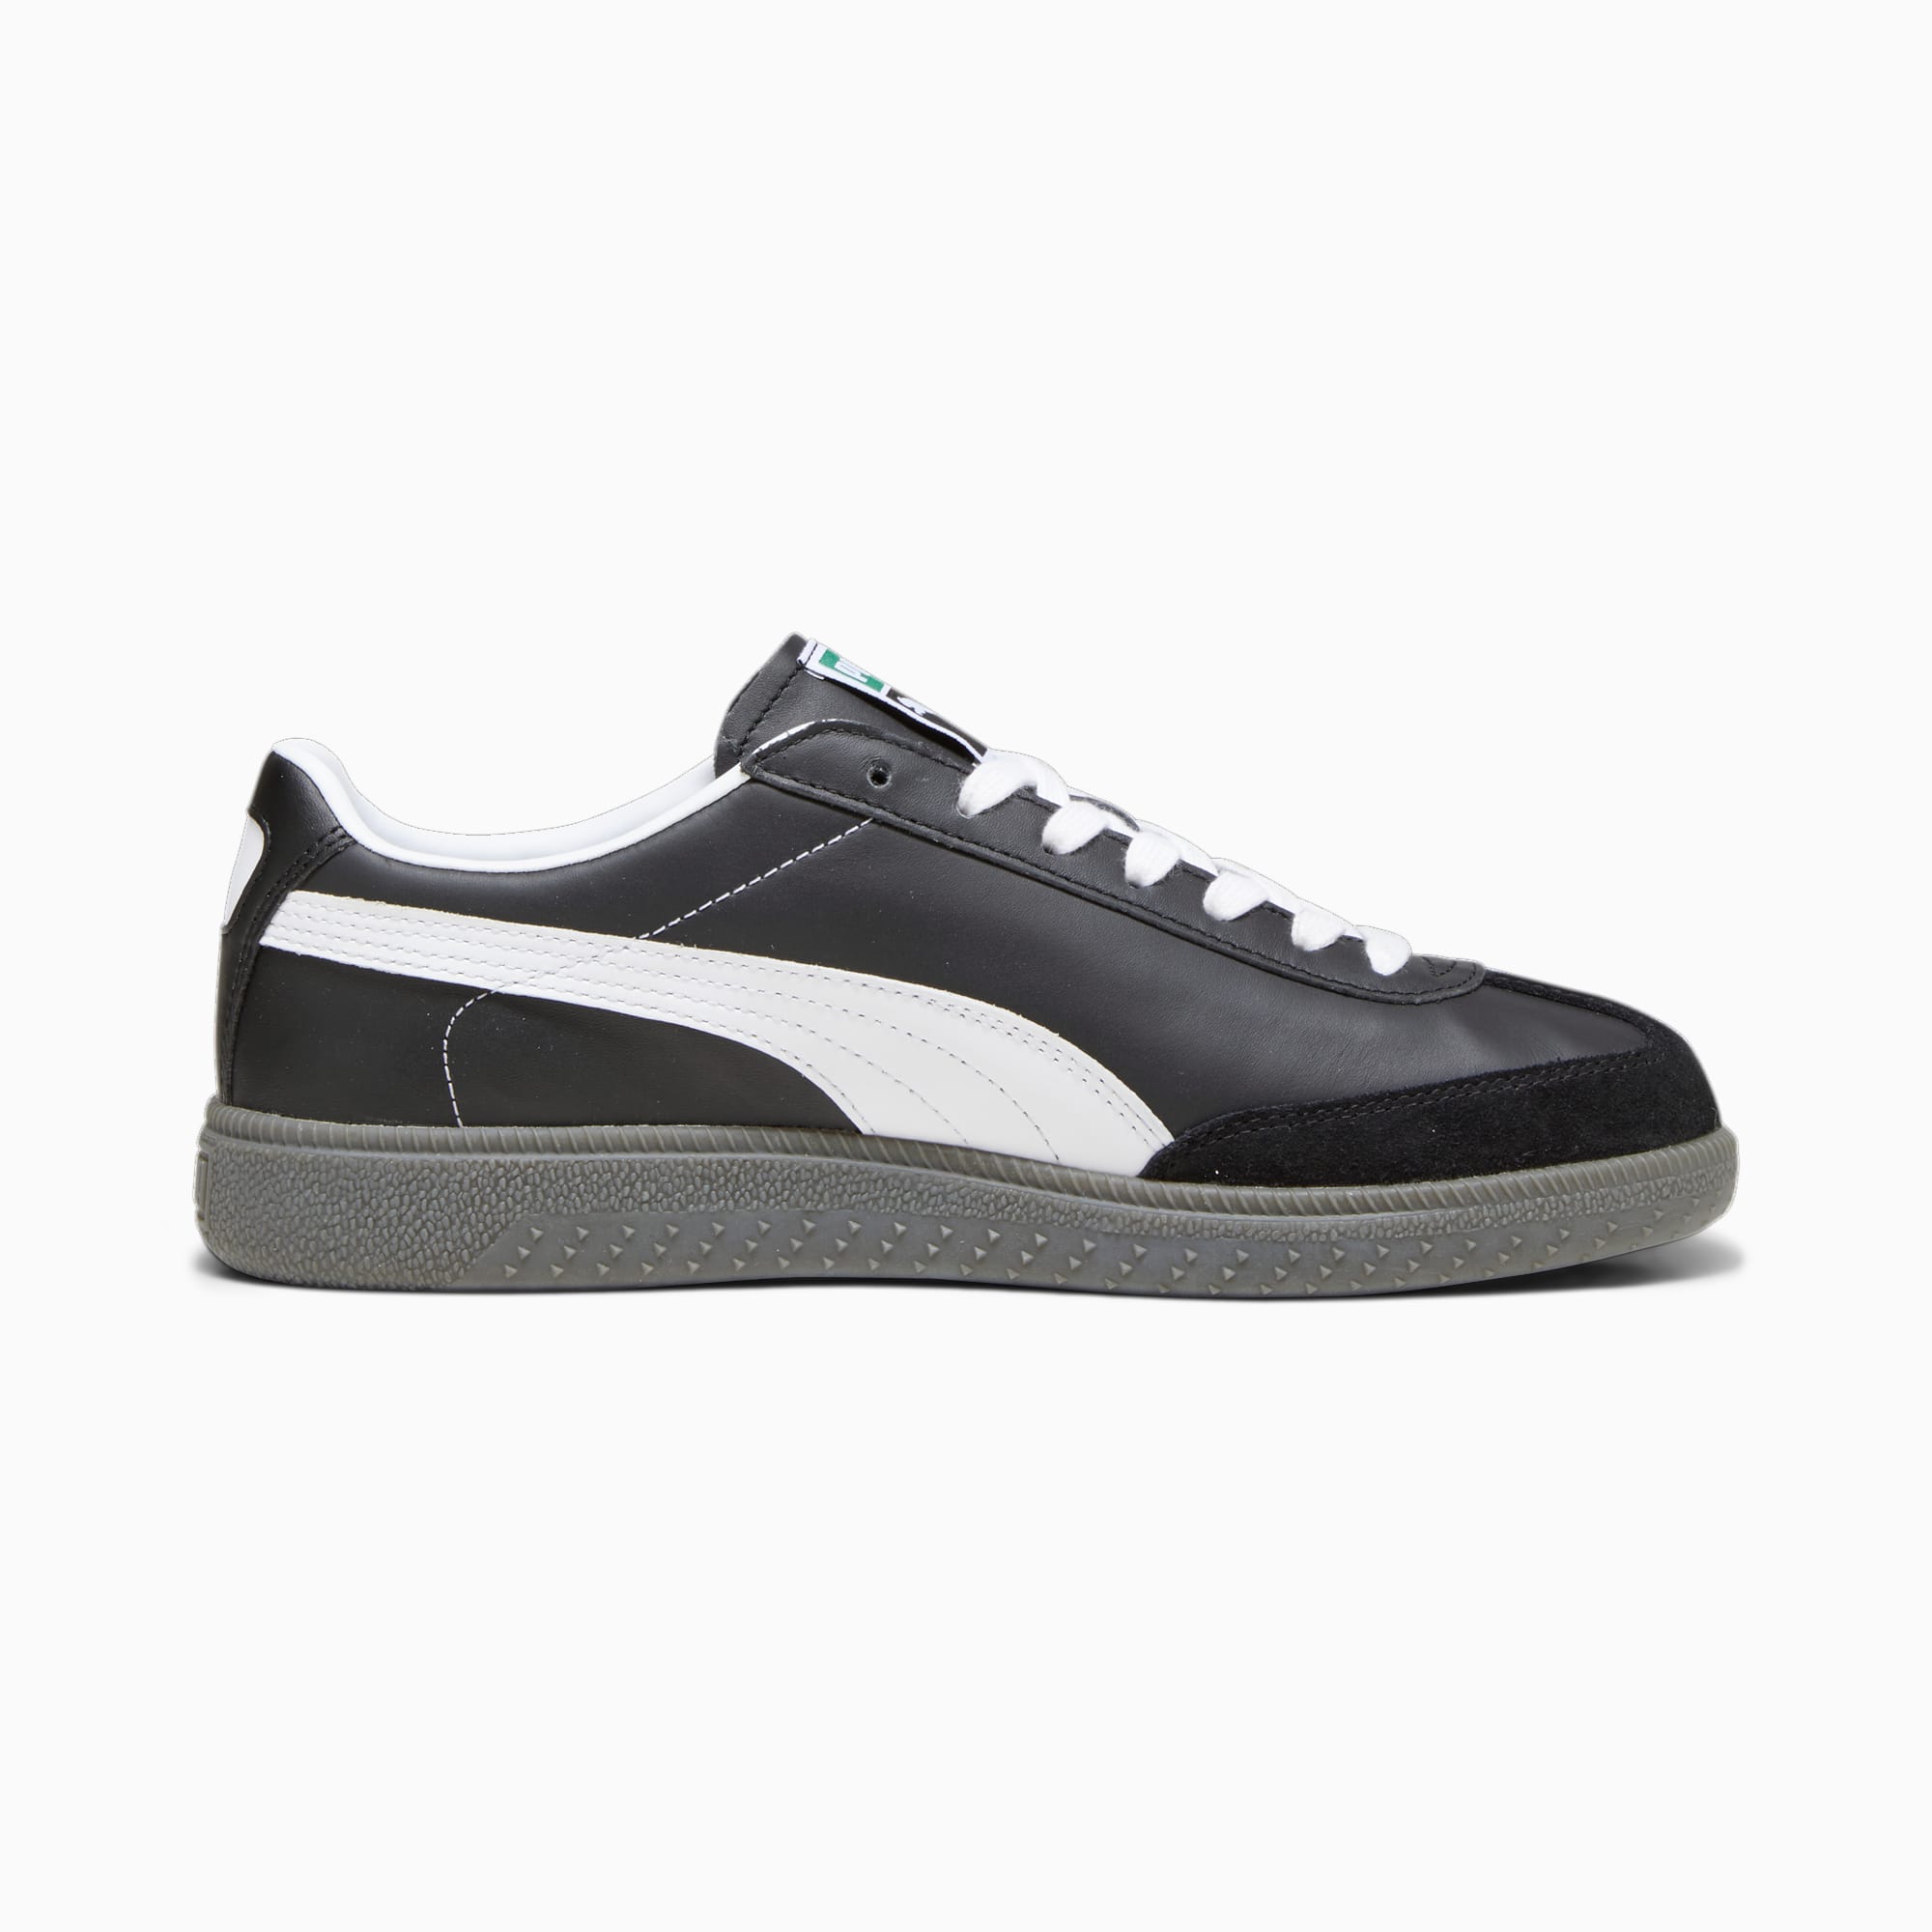 PUMA Colibri OG Sneakers Schuhe, Schwarz/Weiß, Größe: 35.5, Schuhe